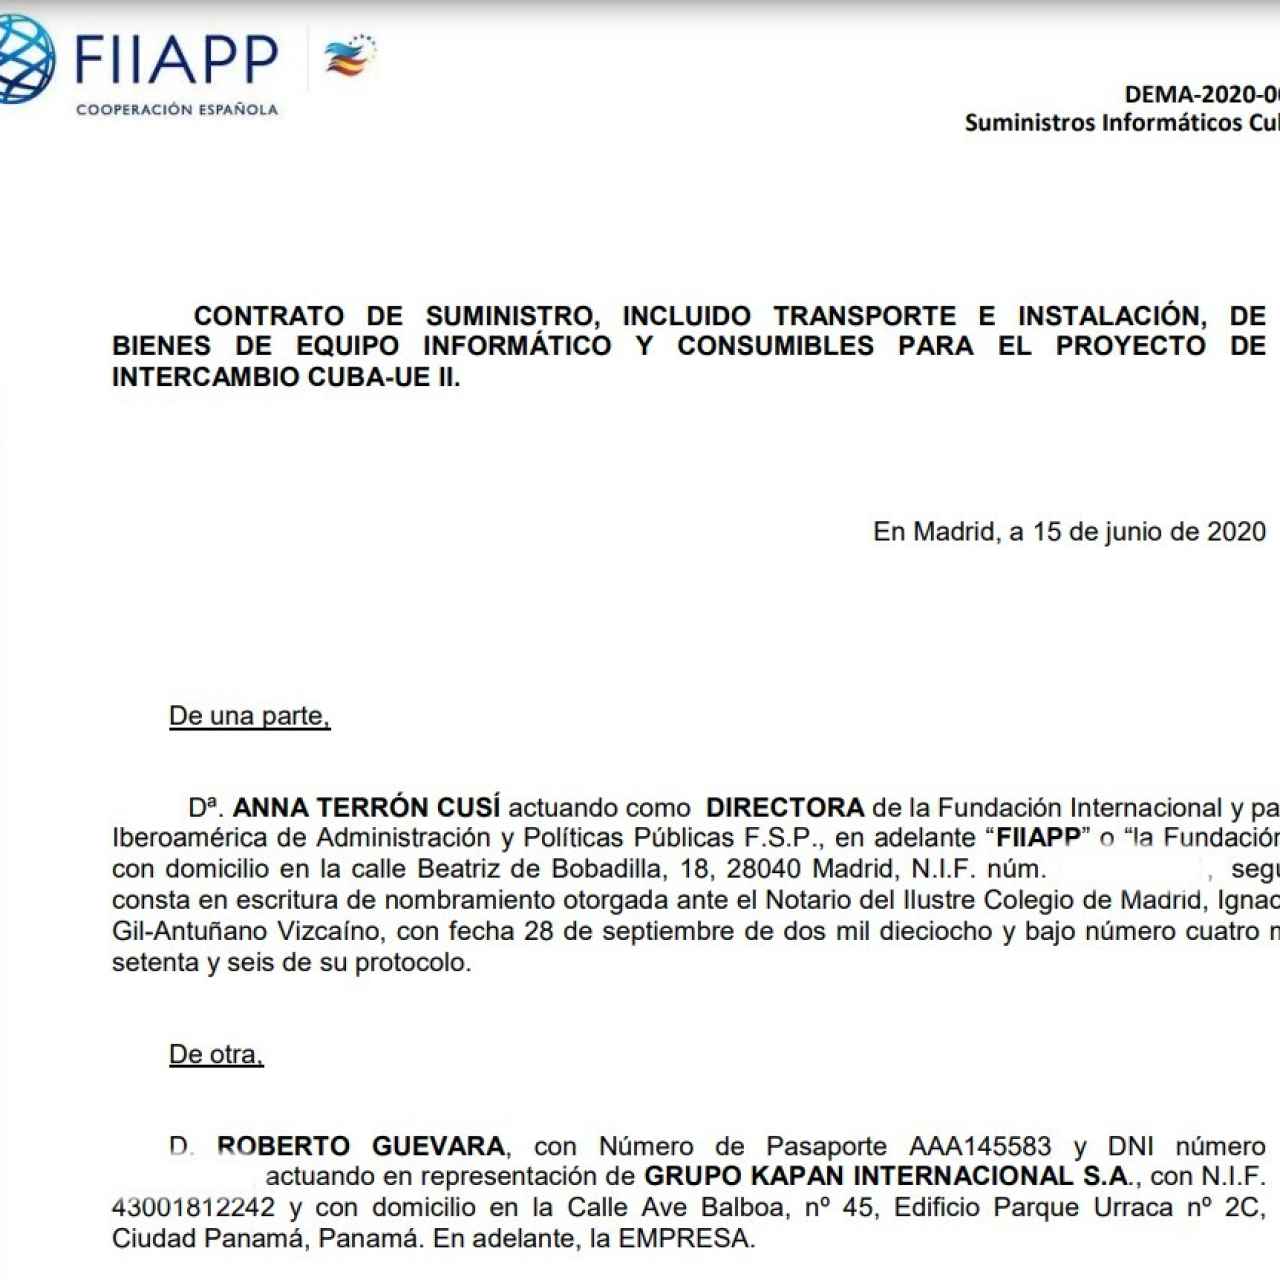 Roberto Guevara Lezica aparece como representante del Grupo Kapan Internacional en el contrato firmado con la fundación FIIAPP del Ministerio de Asuntos Exteriores.